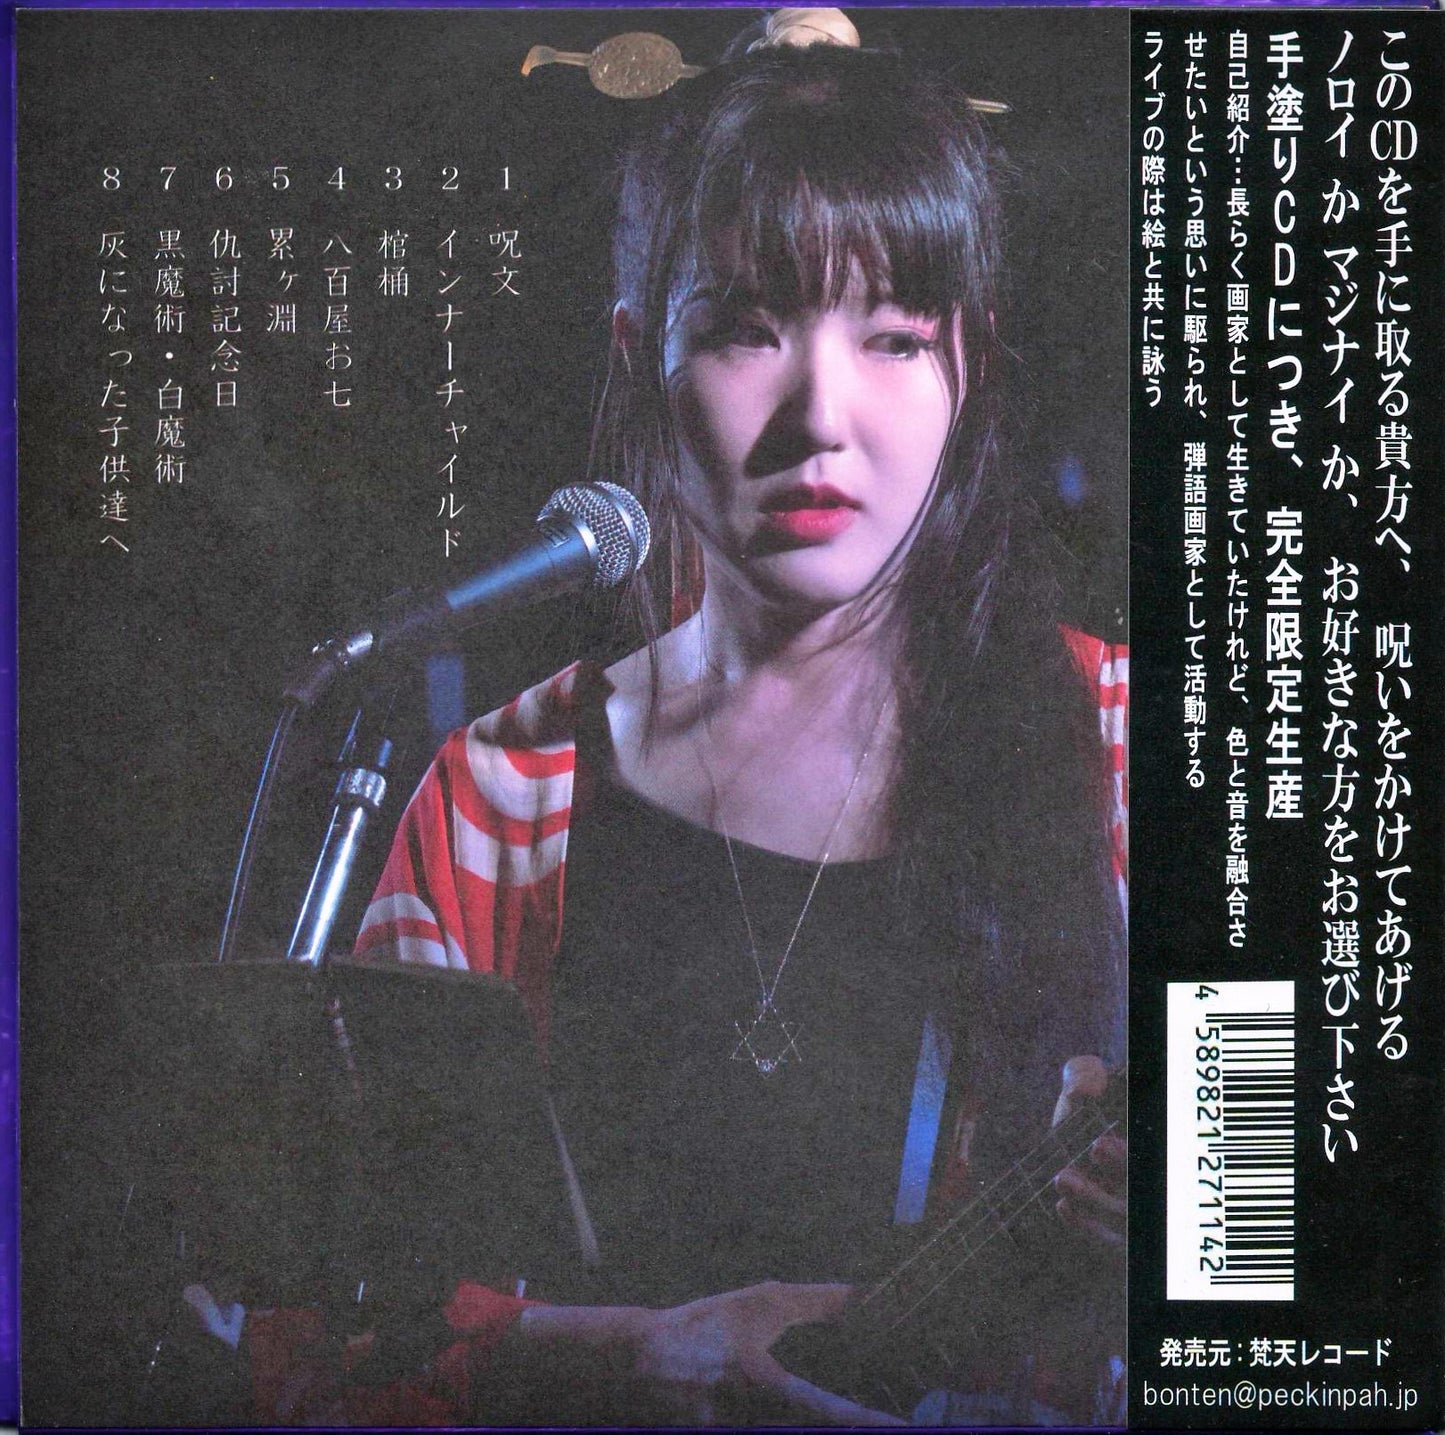 Rury Shibuya - Mystical Barrier - Japan  CD